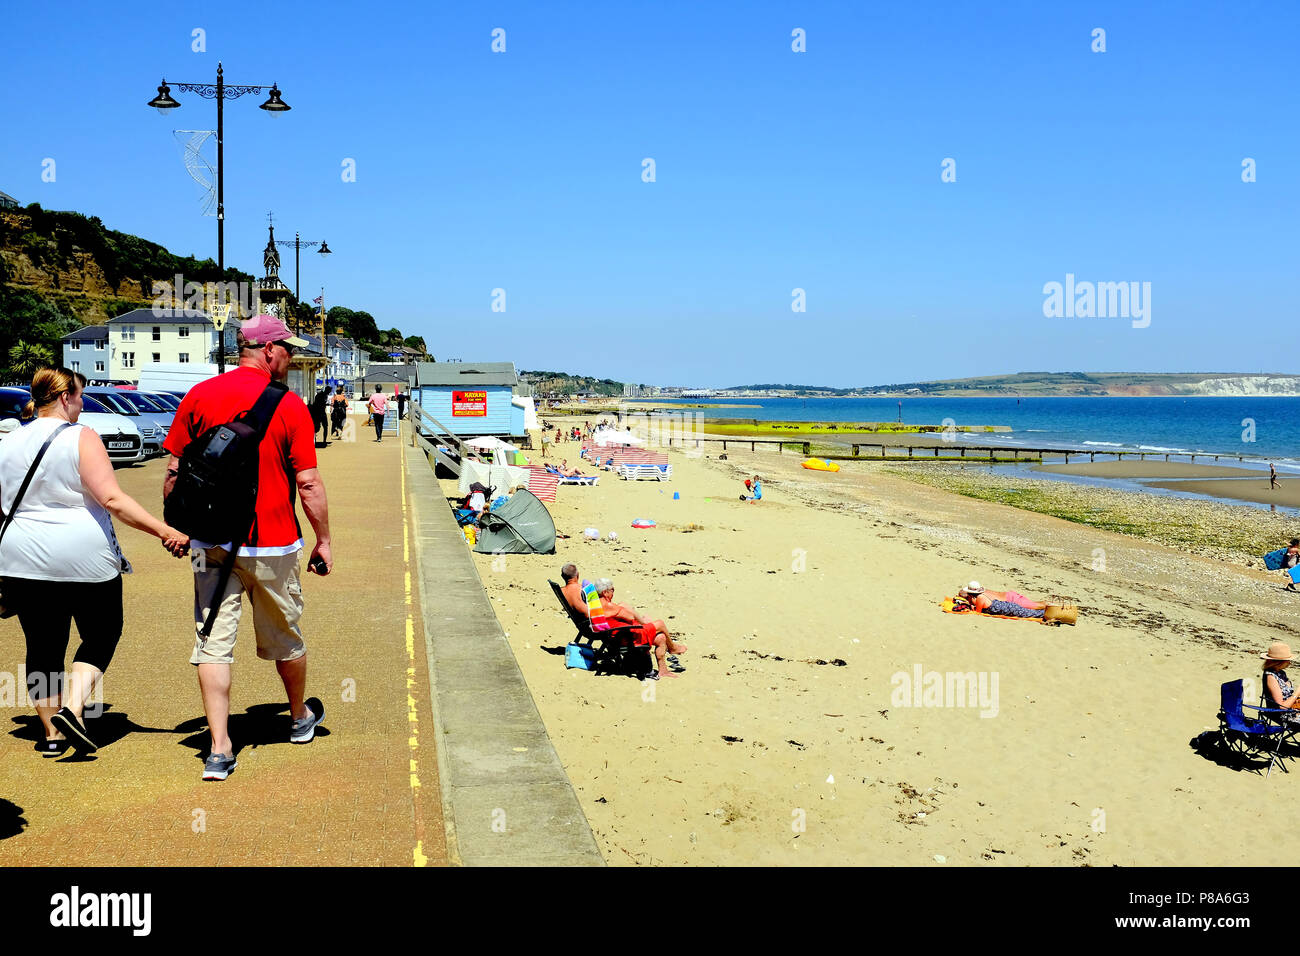 Shanklin, Isle of Wight, Regno Unito. Giugno 25, 2018. I turisti a piedi la passeggiata a mare e relax sulla spiaggia a Shanklin sull'Isola di Wight, Regno Unito. Foto Stock